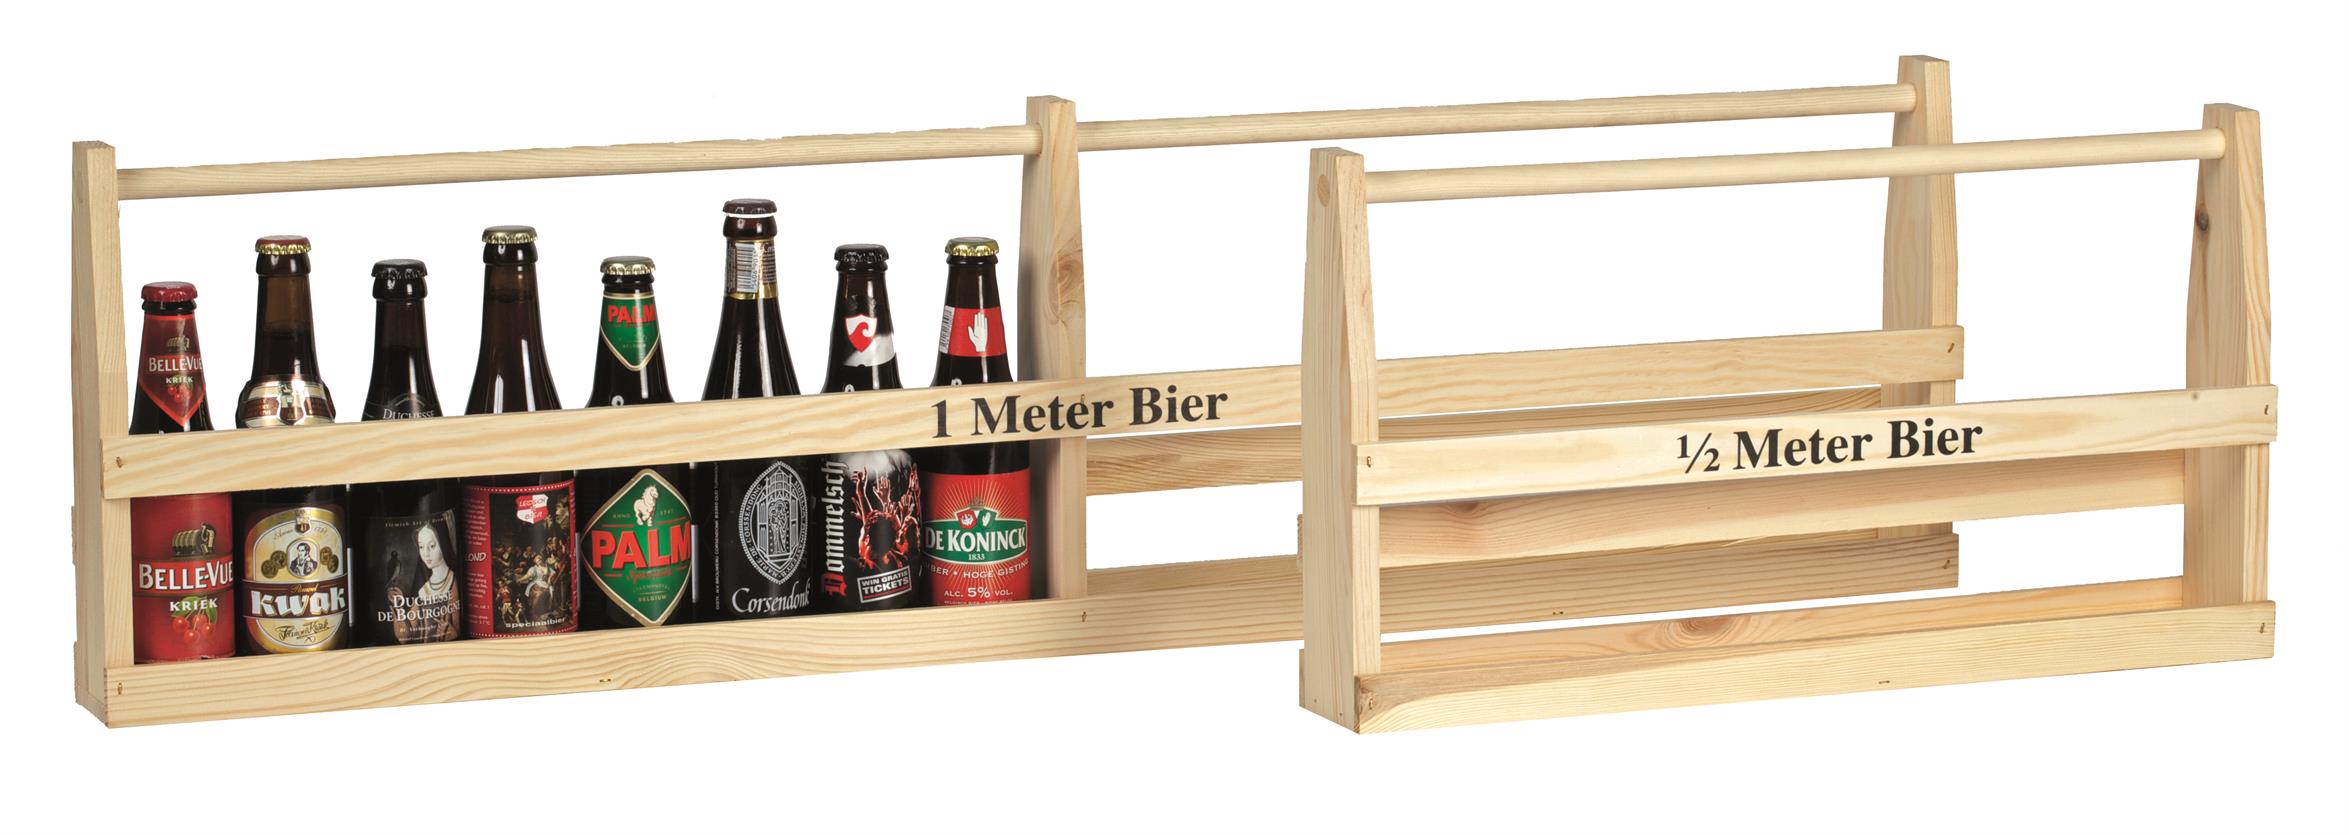 Picture of Ds à 10 houten rek 1/2 meter bier  (0,30/0,33 cl)